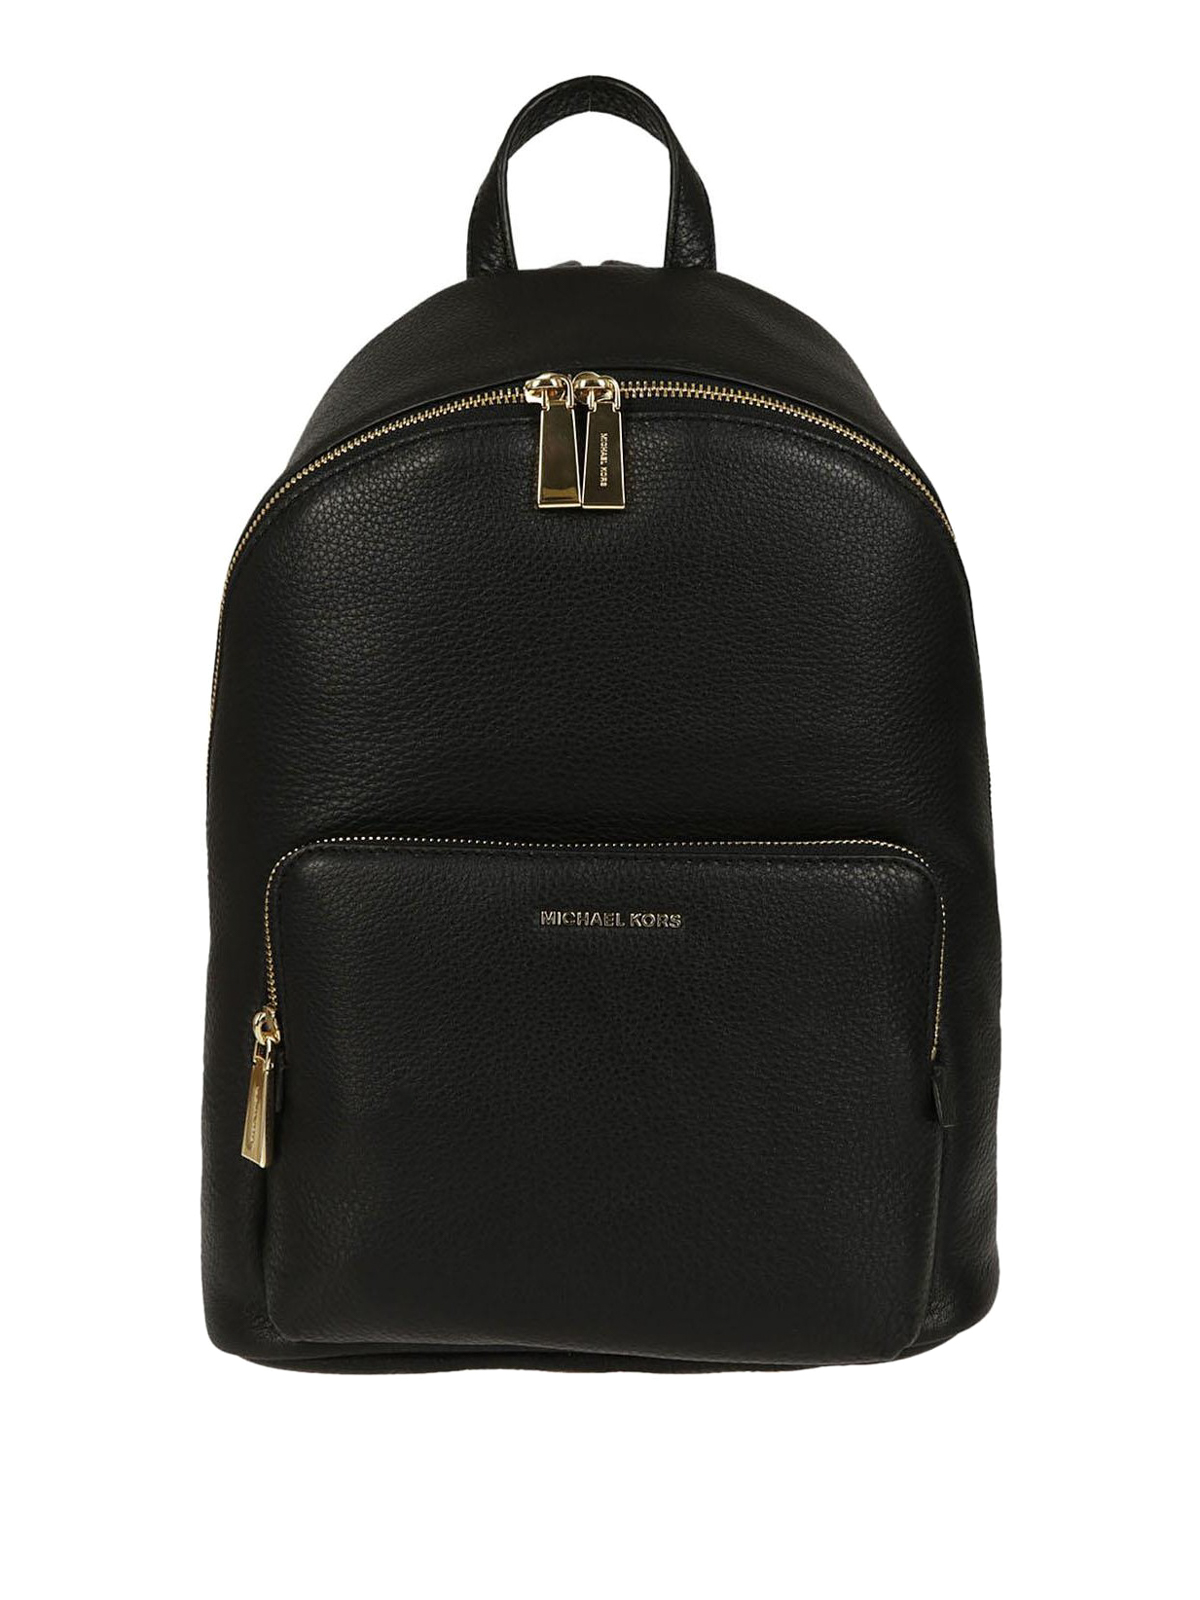 Backpacks Michael Kors - Black full grain leather backpack